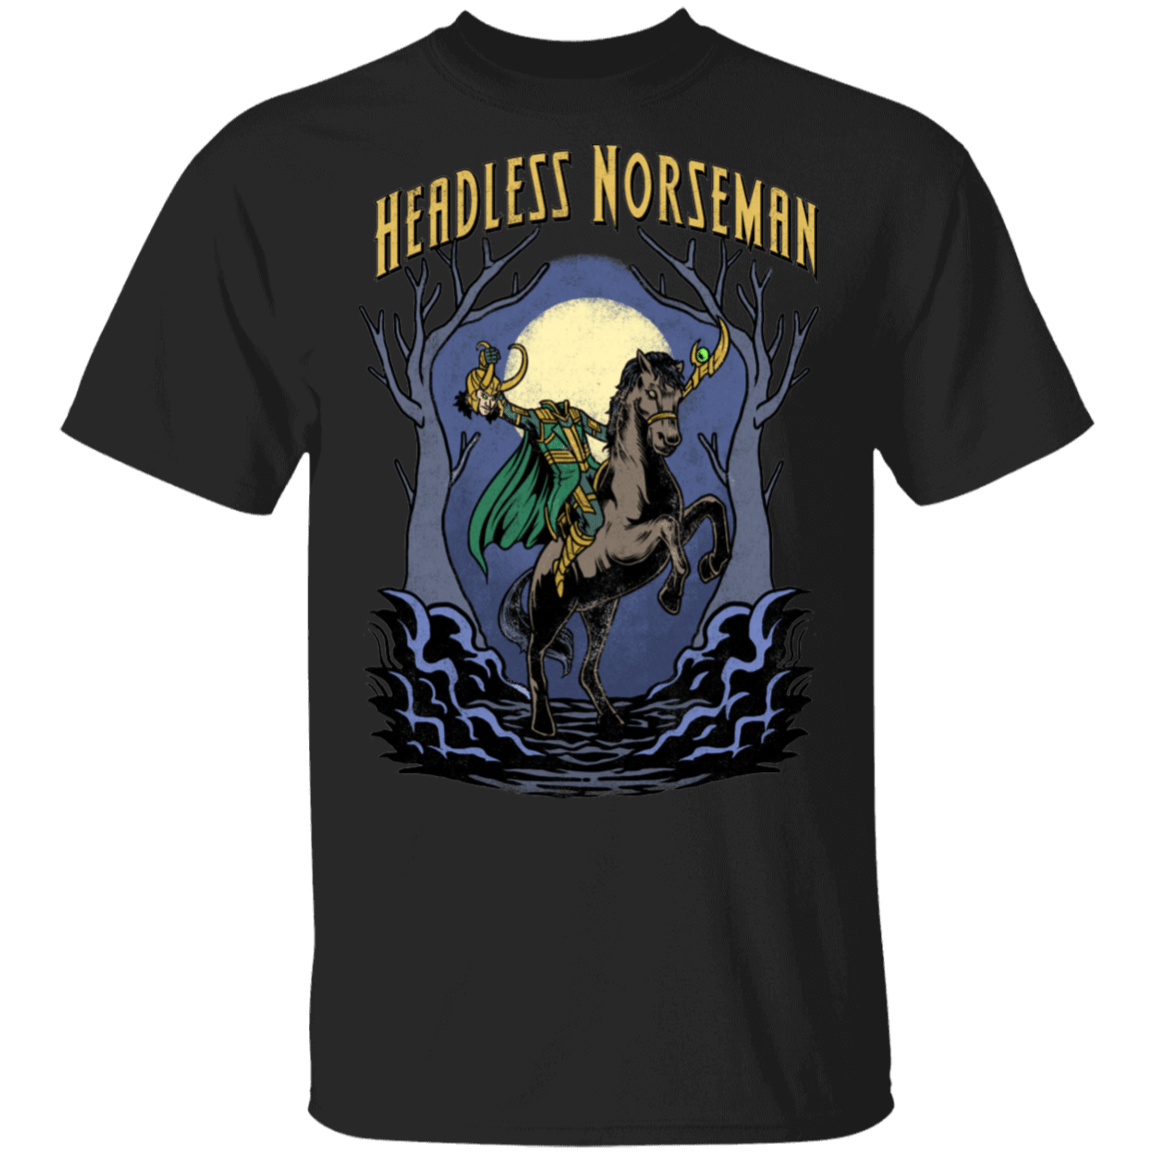 Headless Norseman T-Shirt